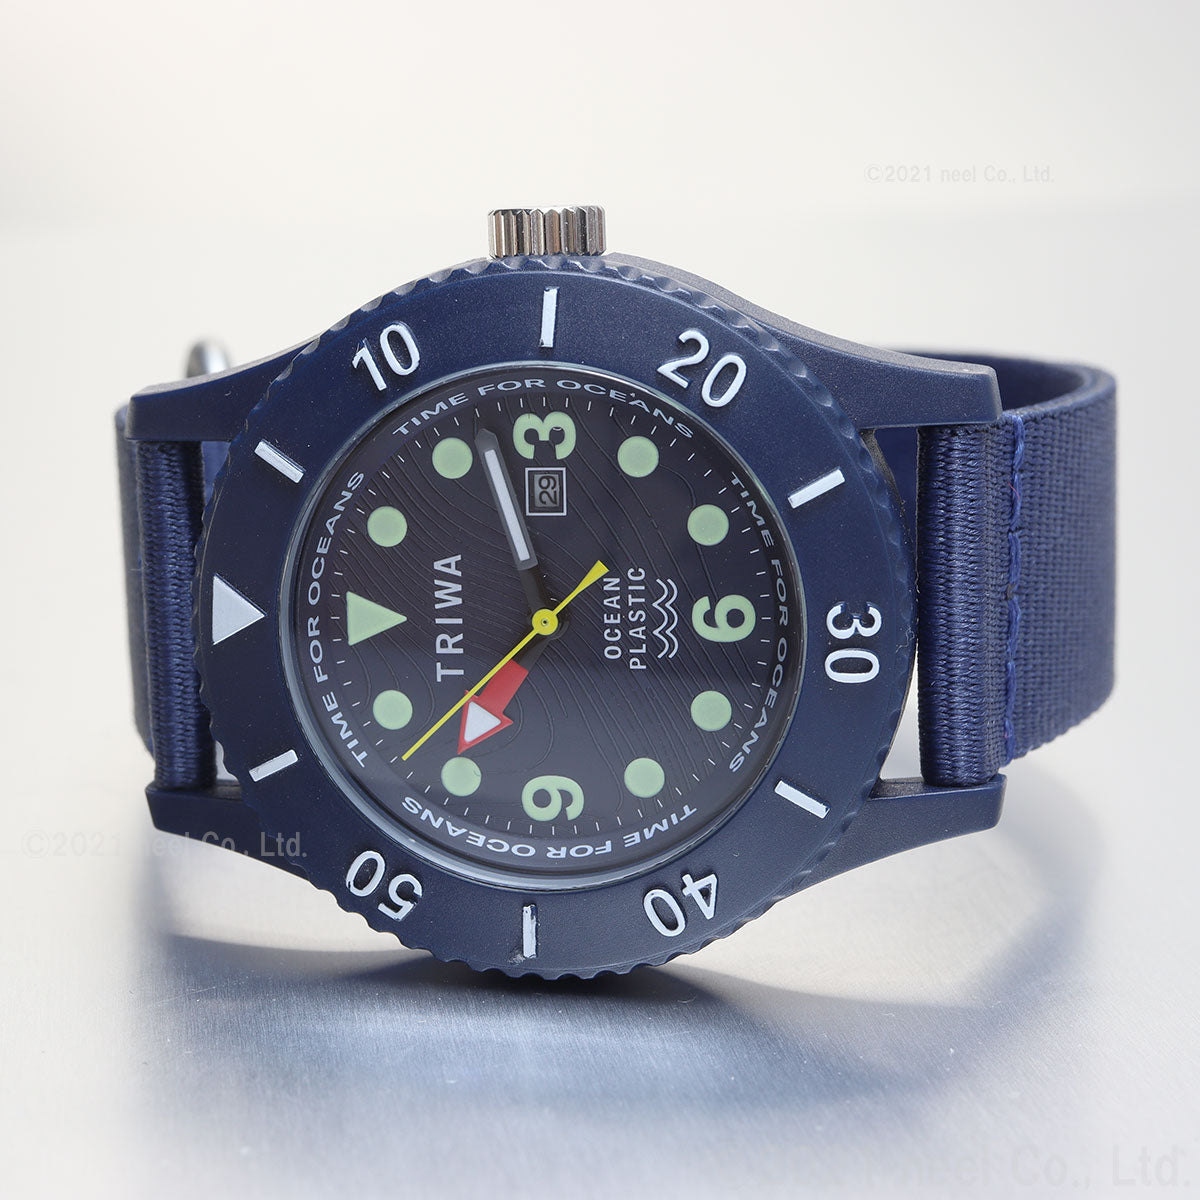 トリワ TRIWA 腕時計 メンズ レディース タイムフォーオーシャンズ サブマリーナ ディープブルー TIME FOR OCEANS SUBMARINER TFO202-CL150712